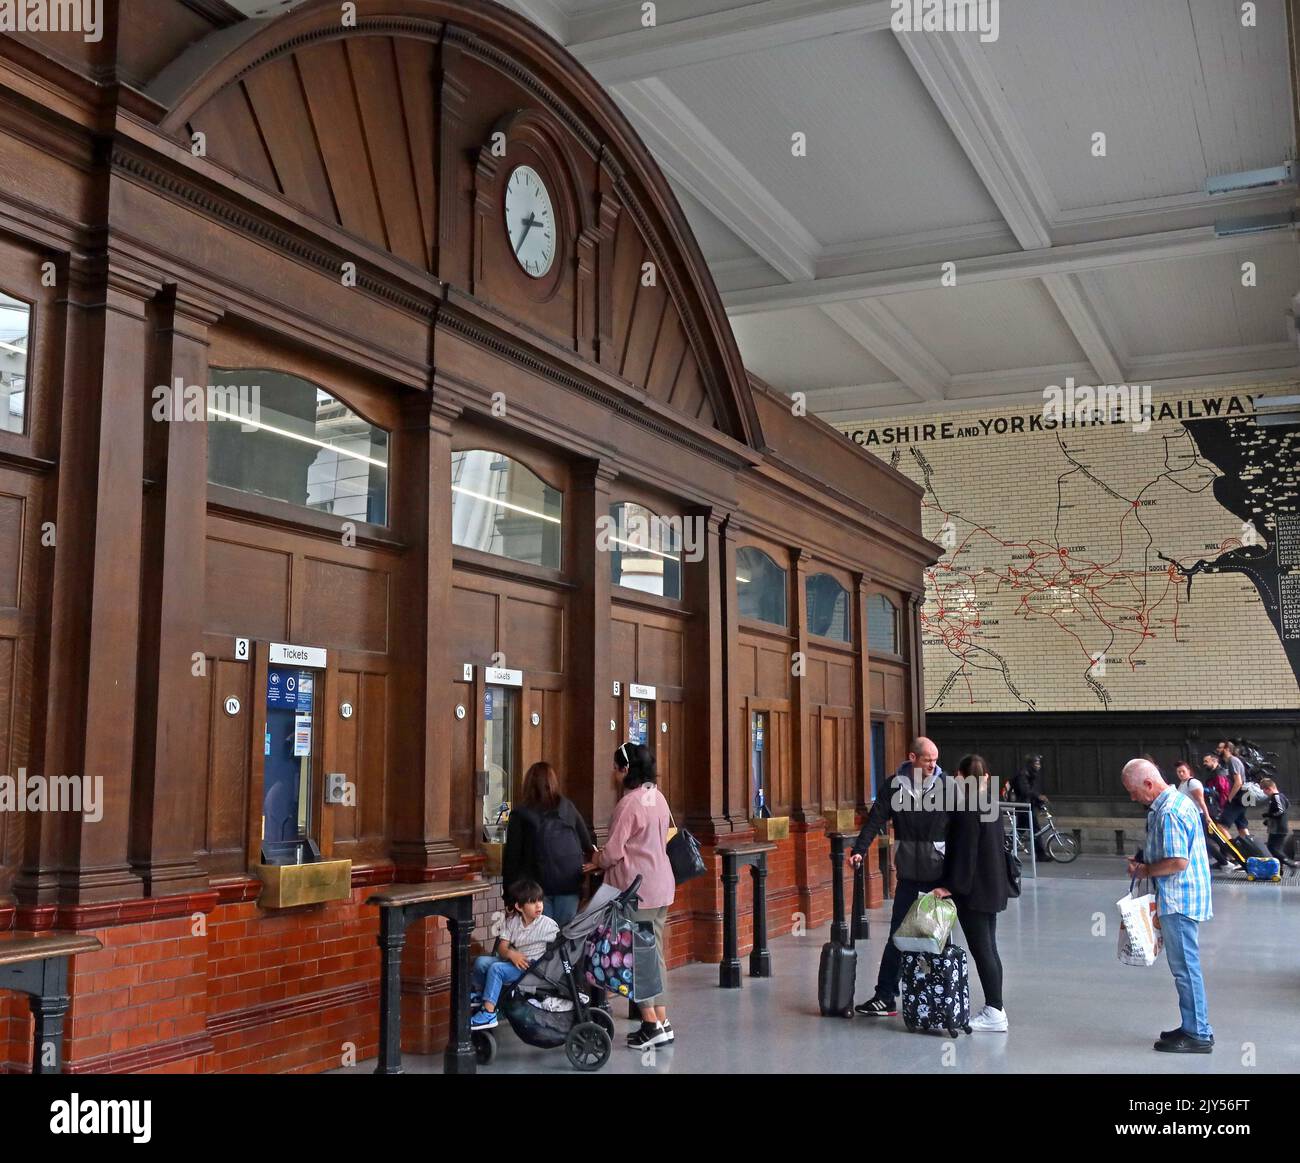 Intérieur de la gare de Manchester Victoria avec ses guichets d'origine, Victoria Railway Station, Manchester, Angleterre, Royaume-Uni, M3 1WY Banque D'Images